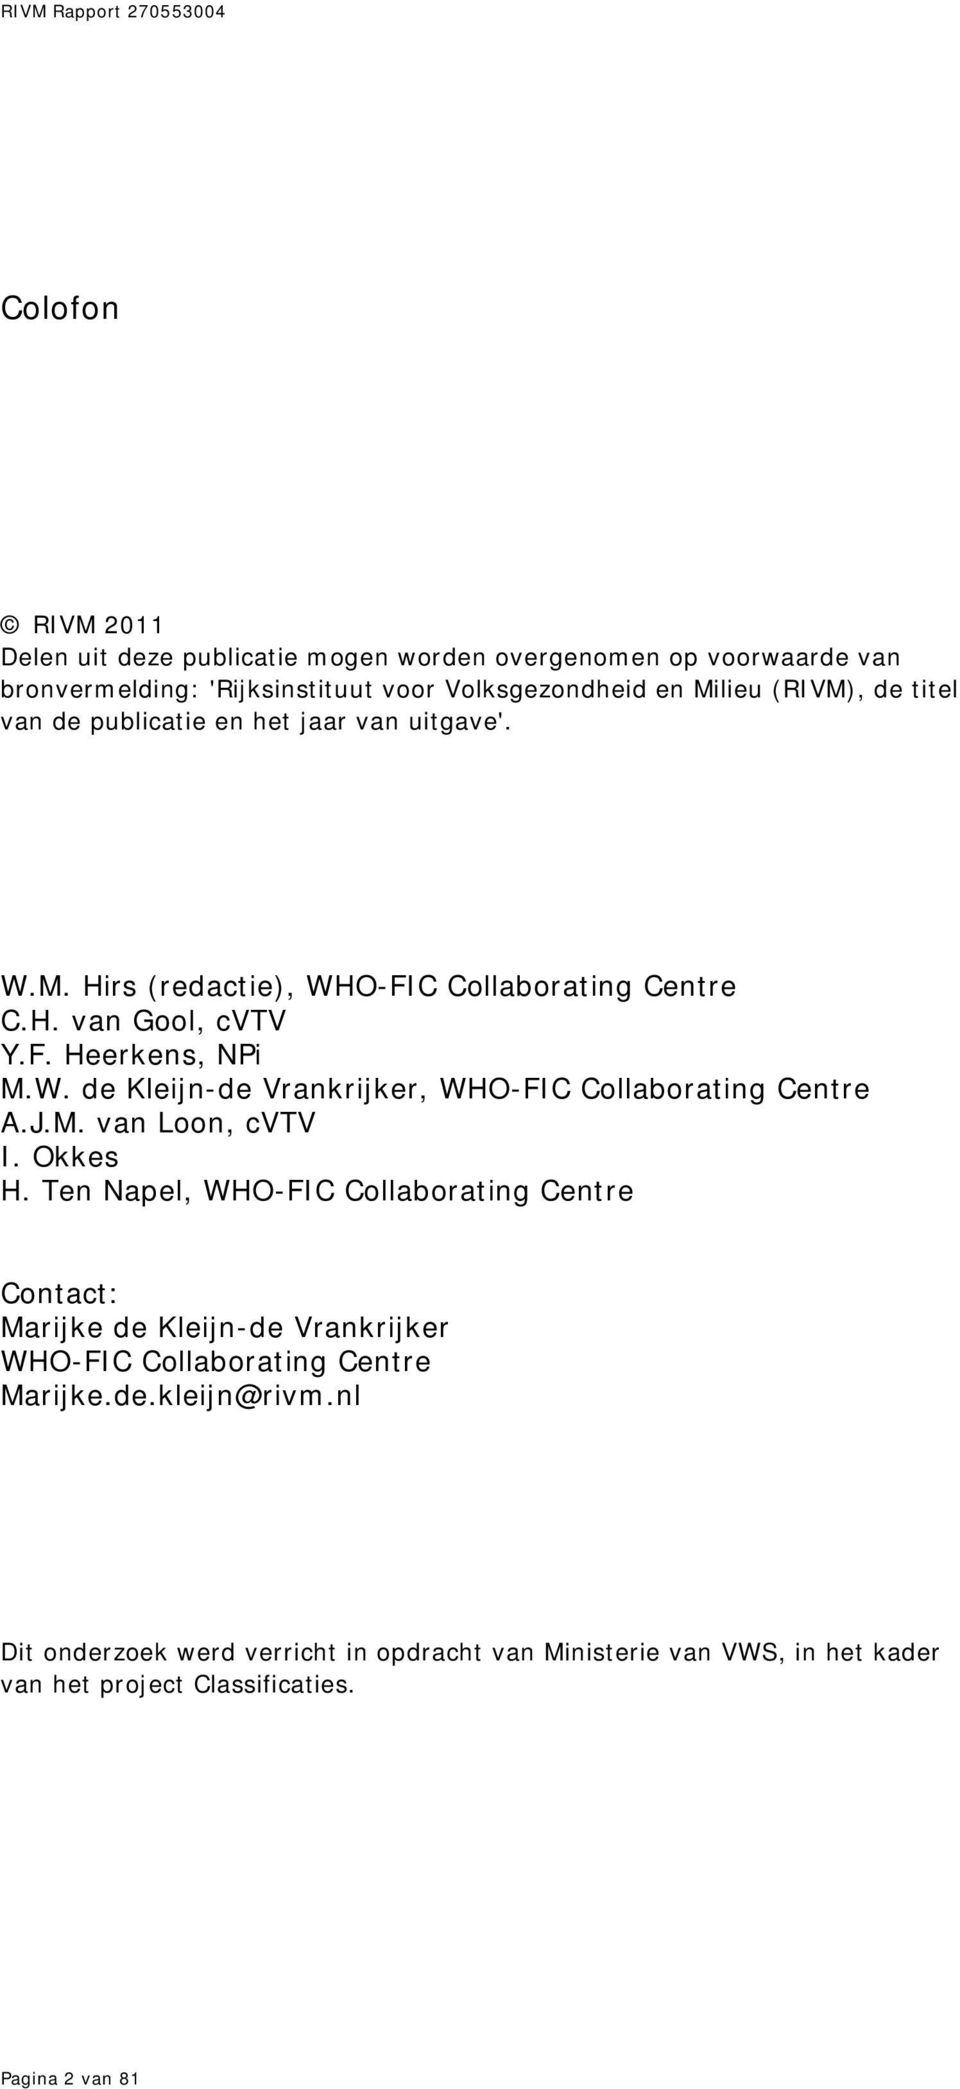 J.M. van Loon, cvtv I. Okkes H. Ten Napel, WHO-FIC Collaborating Centre Contact: Marijke de Kleijn-de Vrankrijker WHO-FIC Collaborating Centre Marijke.de.kleijn@rivm.